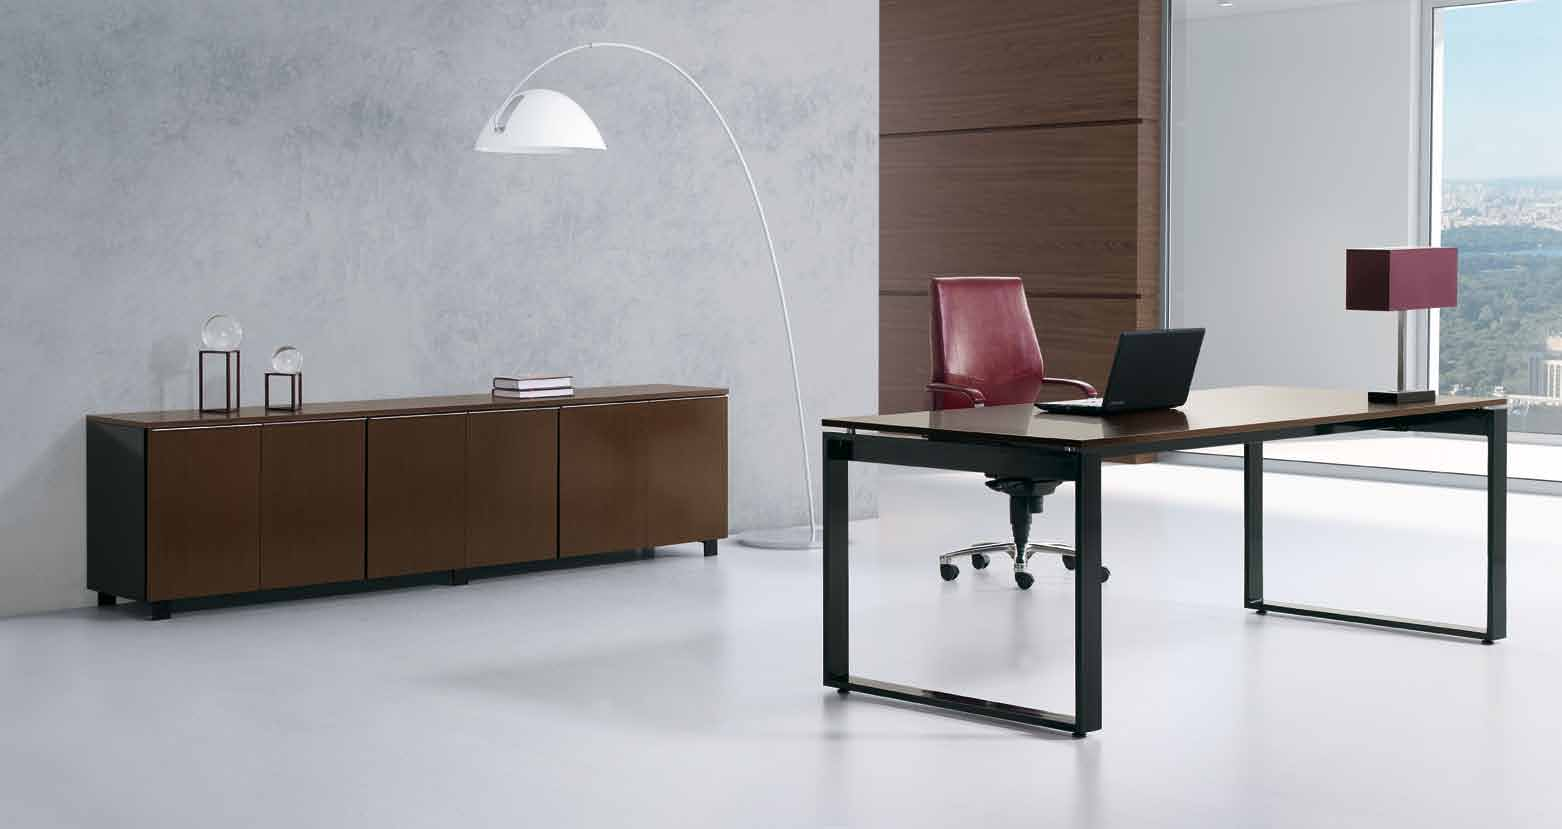 Arqui Plus é um novo conceito de mobiliário de escritório para a área executiva. De grande beleza, linhas simples e ordenadas tornam-se extremamente atrativas. Armários.